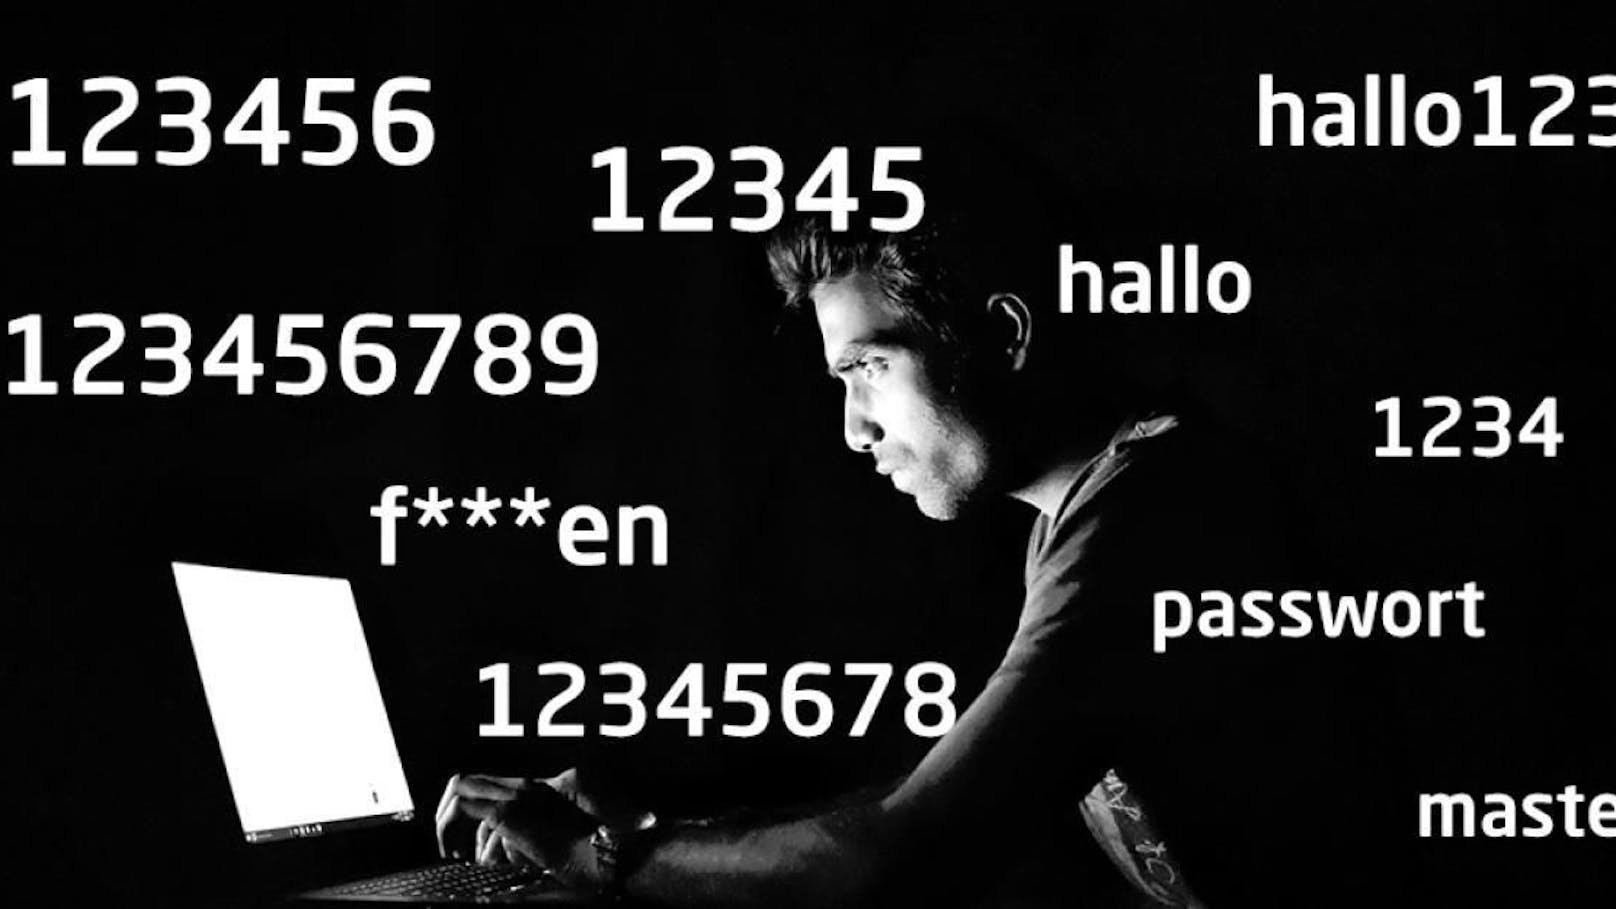 "F***en" unter den 10 häufigsten Passwörtern